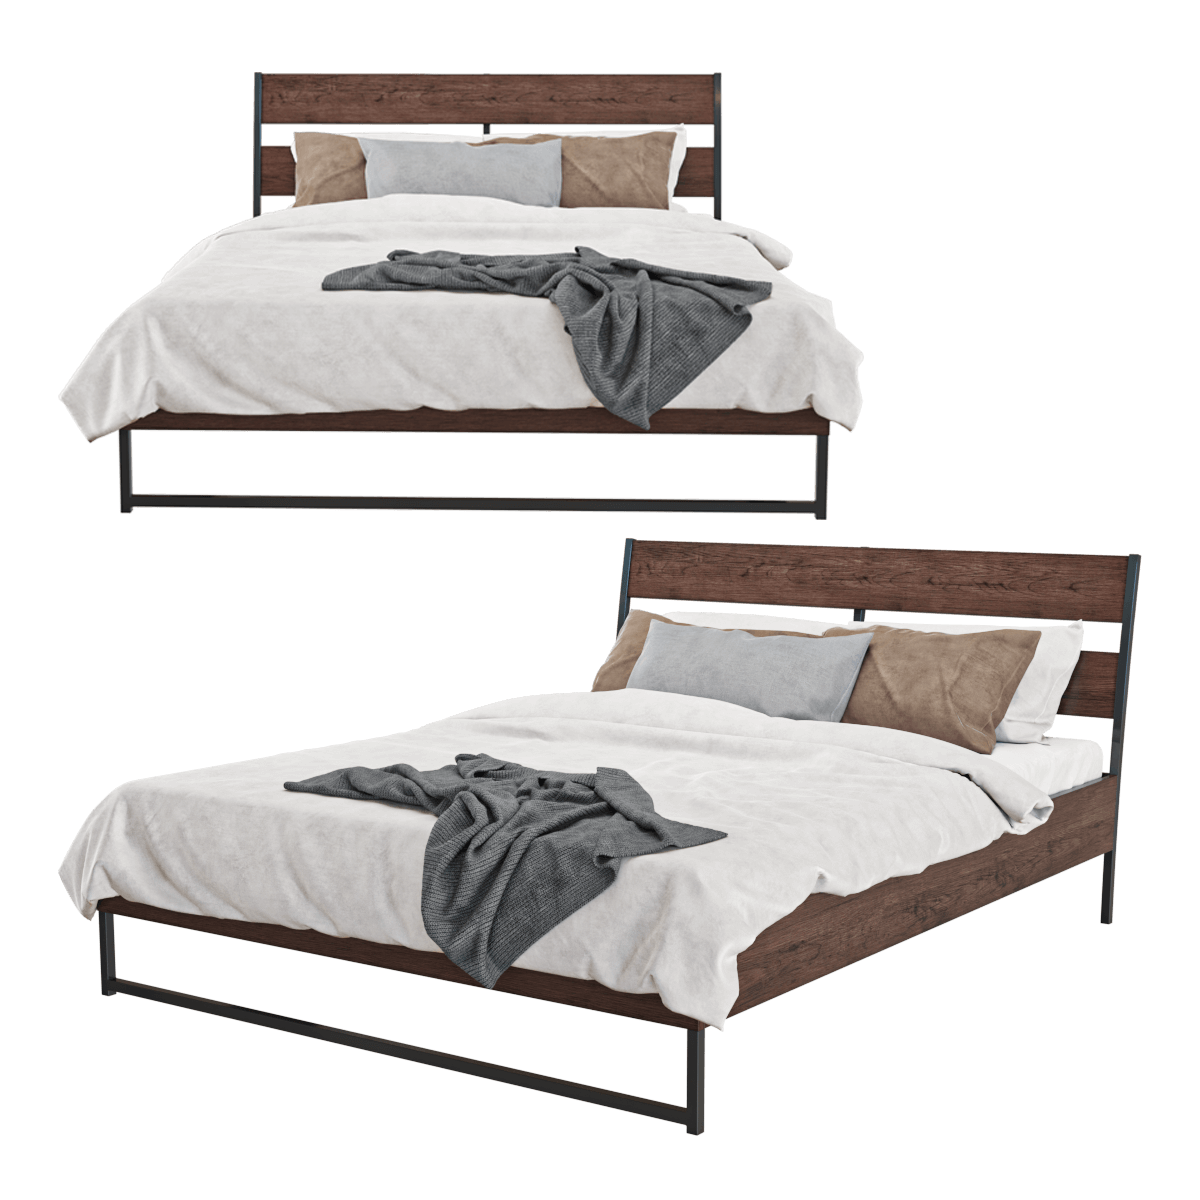 Bed Trysil 3d Model, Trysil Bed Frame